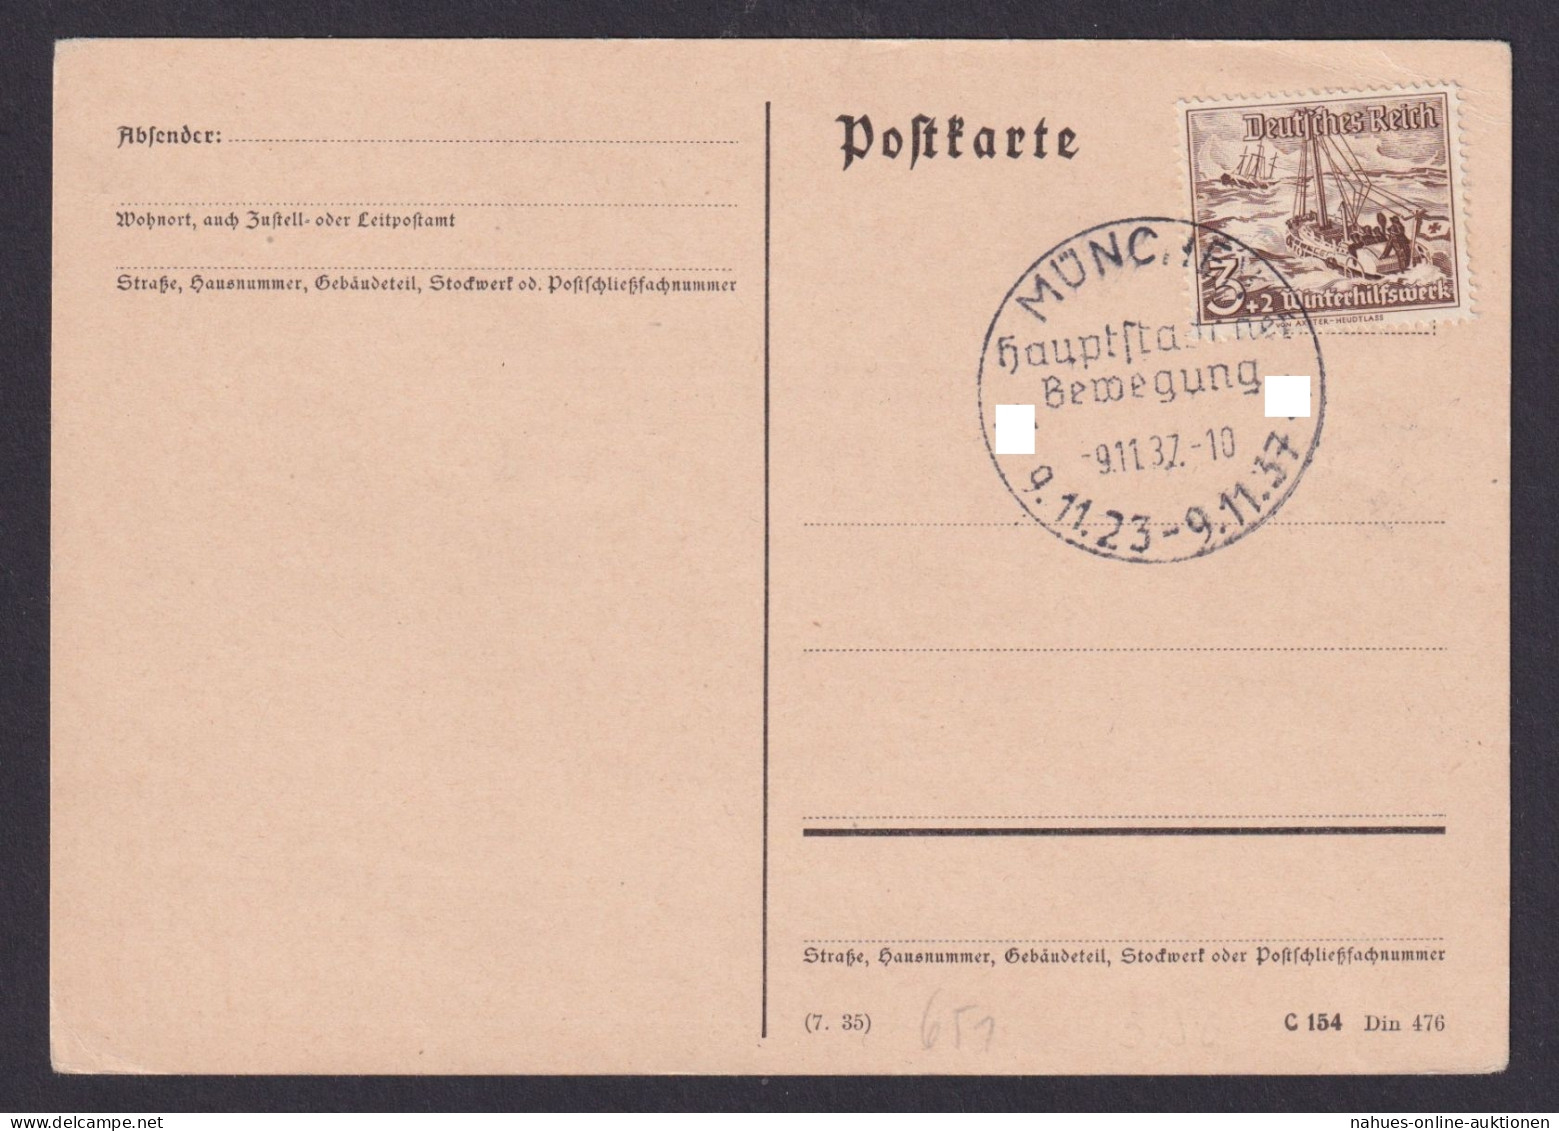 Deutsches Reich Postkarte München SST Hauptstadt D. Bewegung Ungelaufen - Lettres & Documents